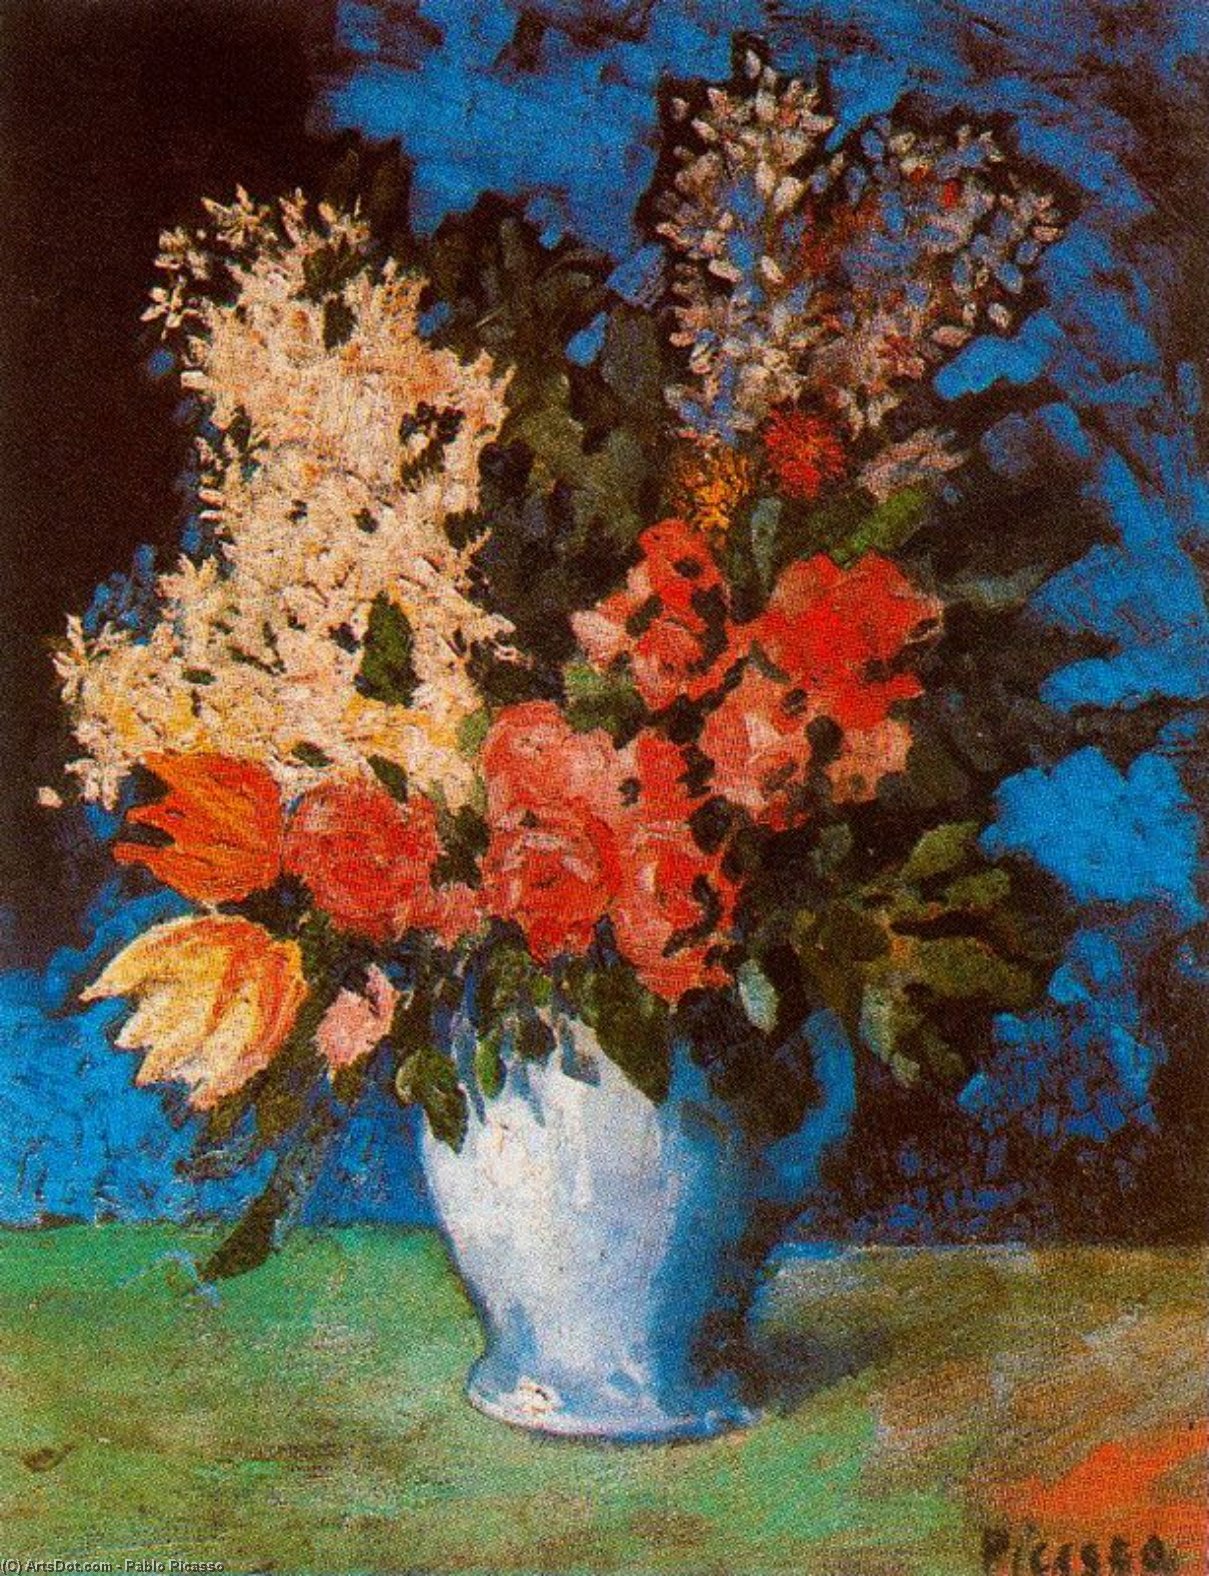 WikiOO.org - אנציקלופדיה לאמנויות יפות - ציור, יצירות אמנות Pablo Picasso - Death nature with flowers